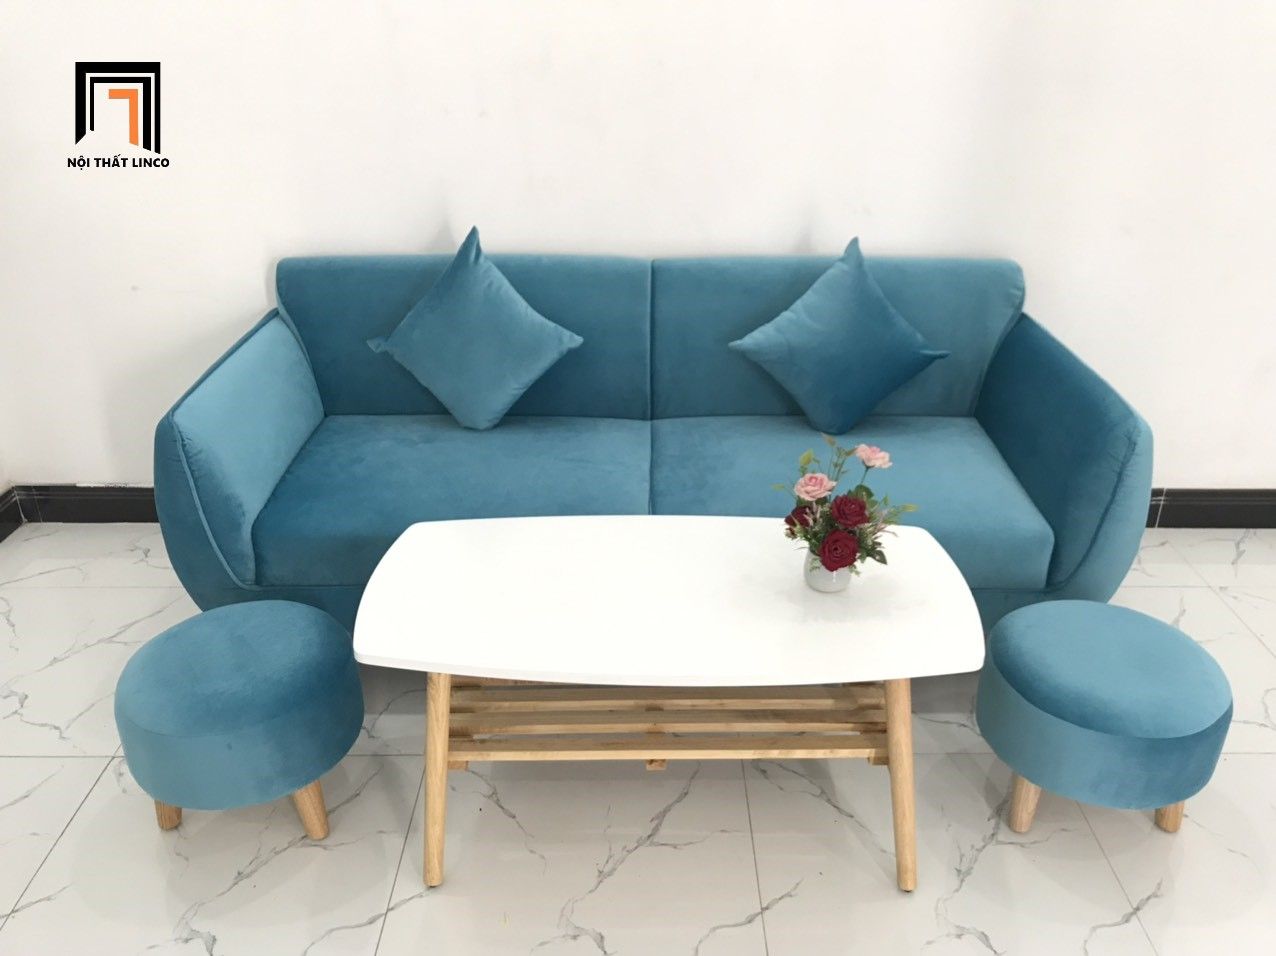  Bộ bàn ghế sofa băng xanh dương nước biển BB dài 1m9 cho căn hộ 